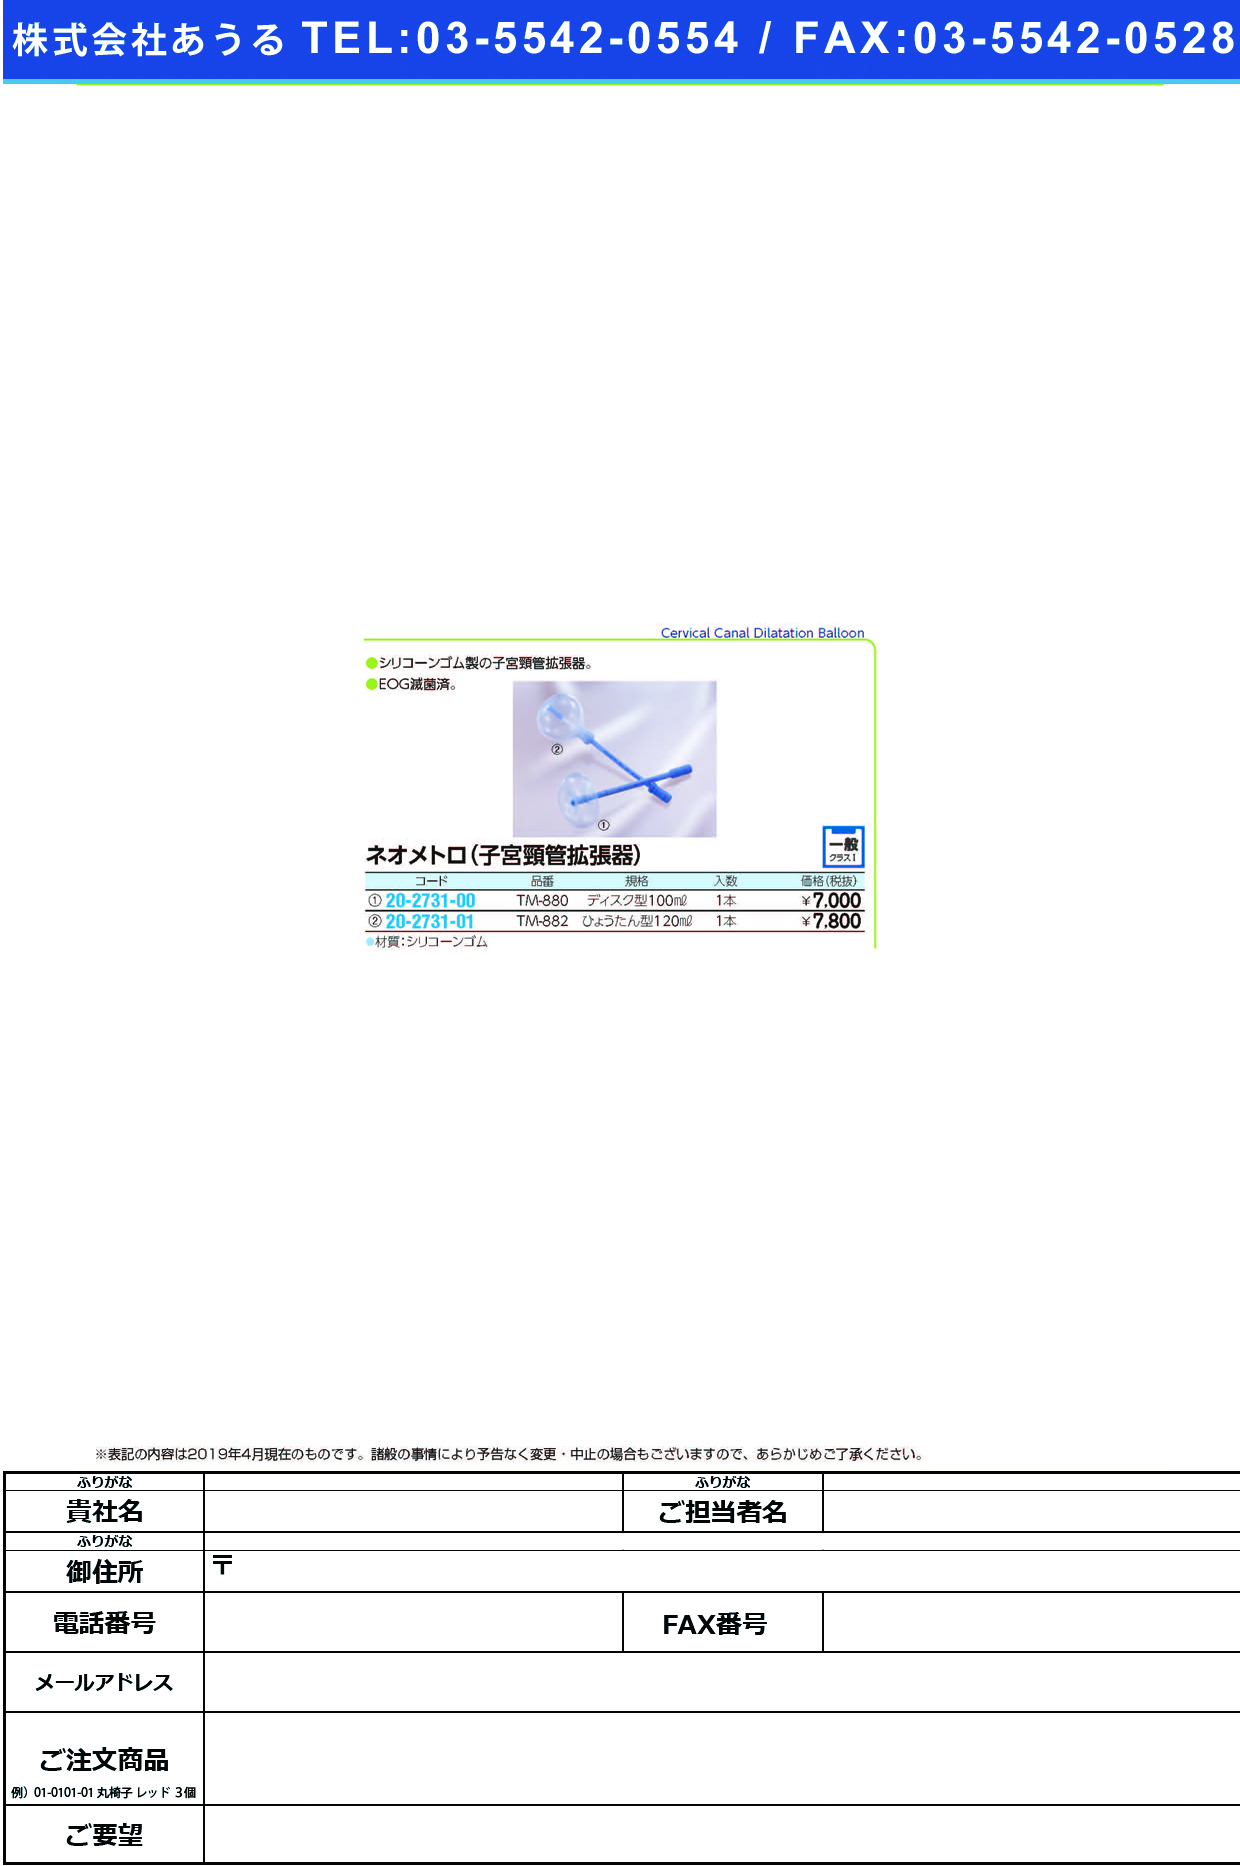 (20-2731-00)ネオメトロ（ディスク型） TM-880(100ML) ﾈｵﾒﾄﾛ(ﾃﾞｨｽｸｶﾞﾀ)(ソフトメディカル)【1箱単位】【2019年カタログ商品】